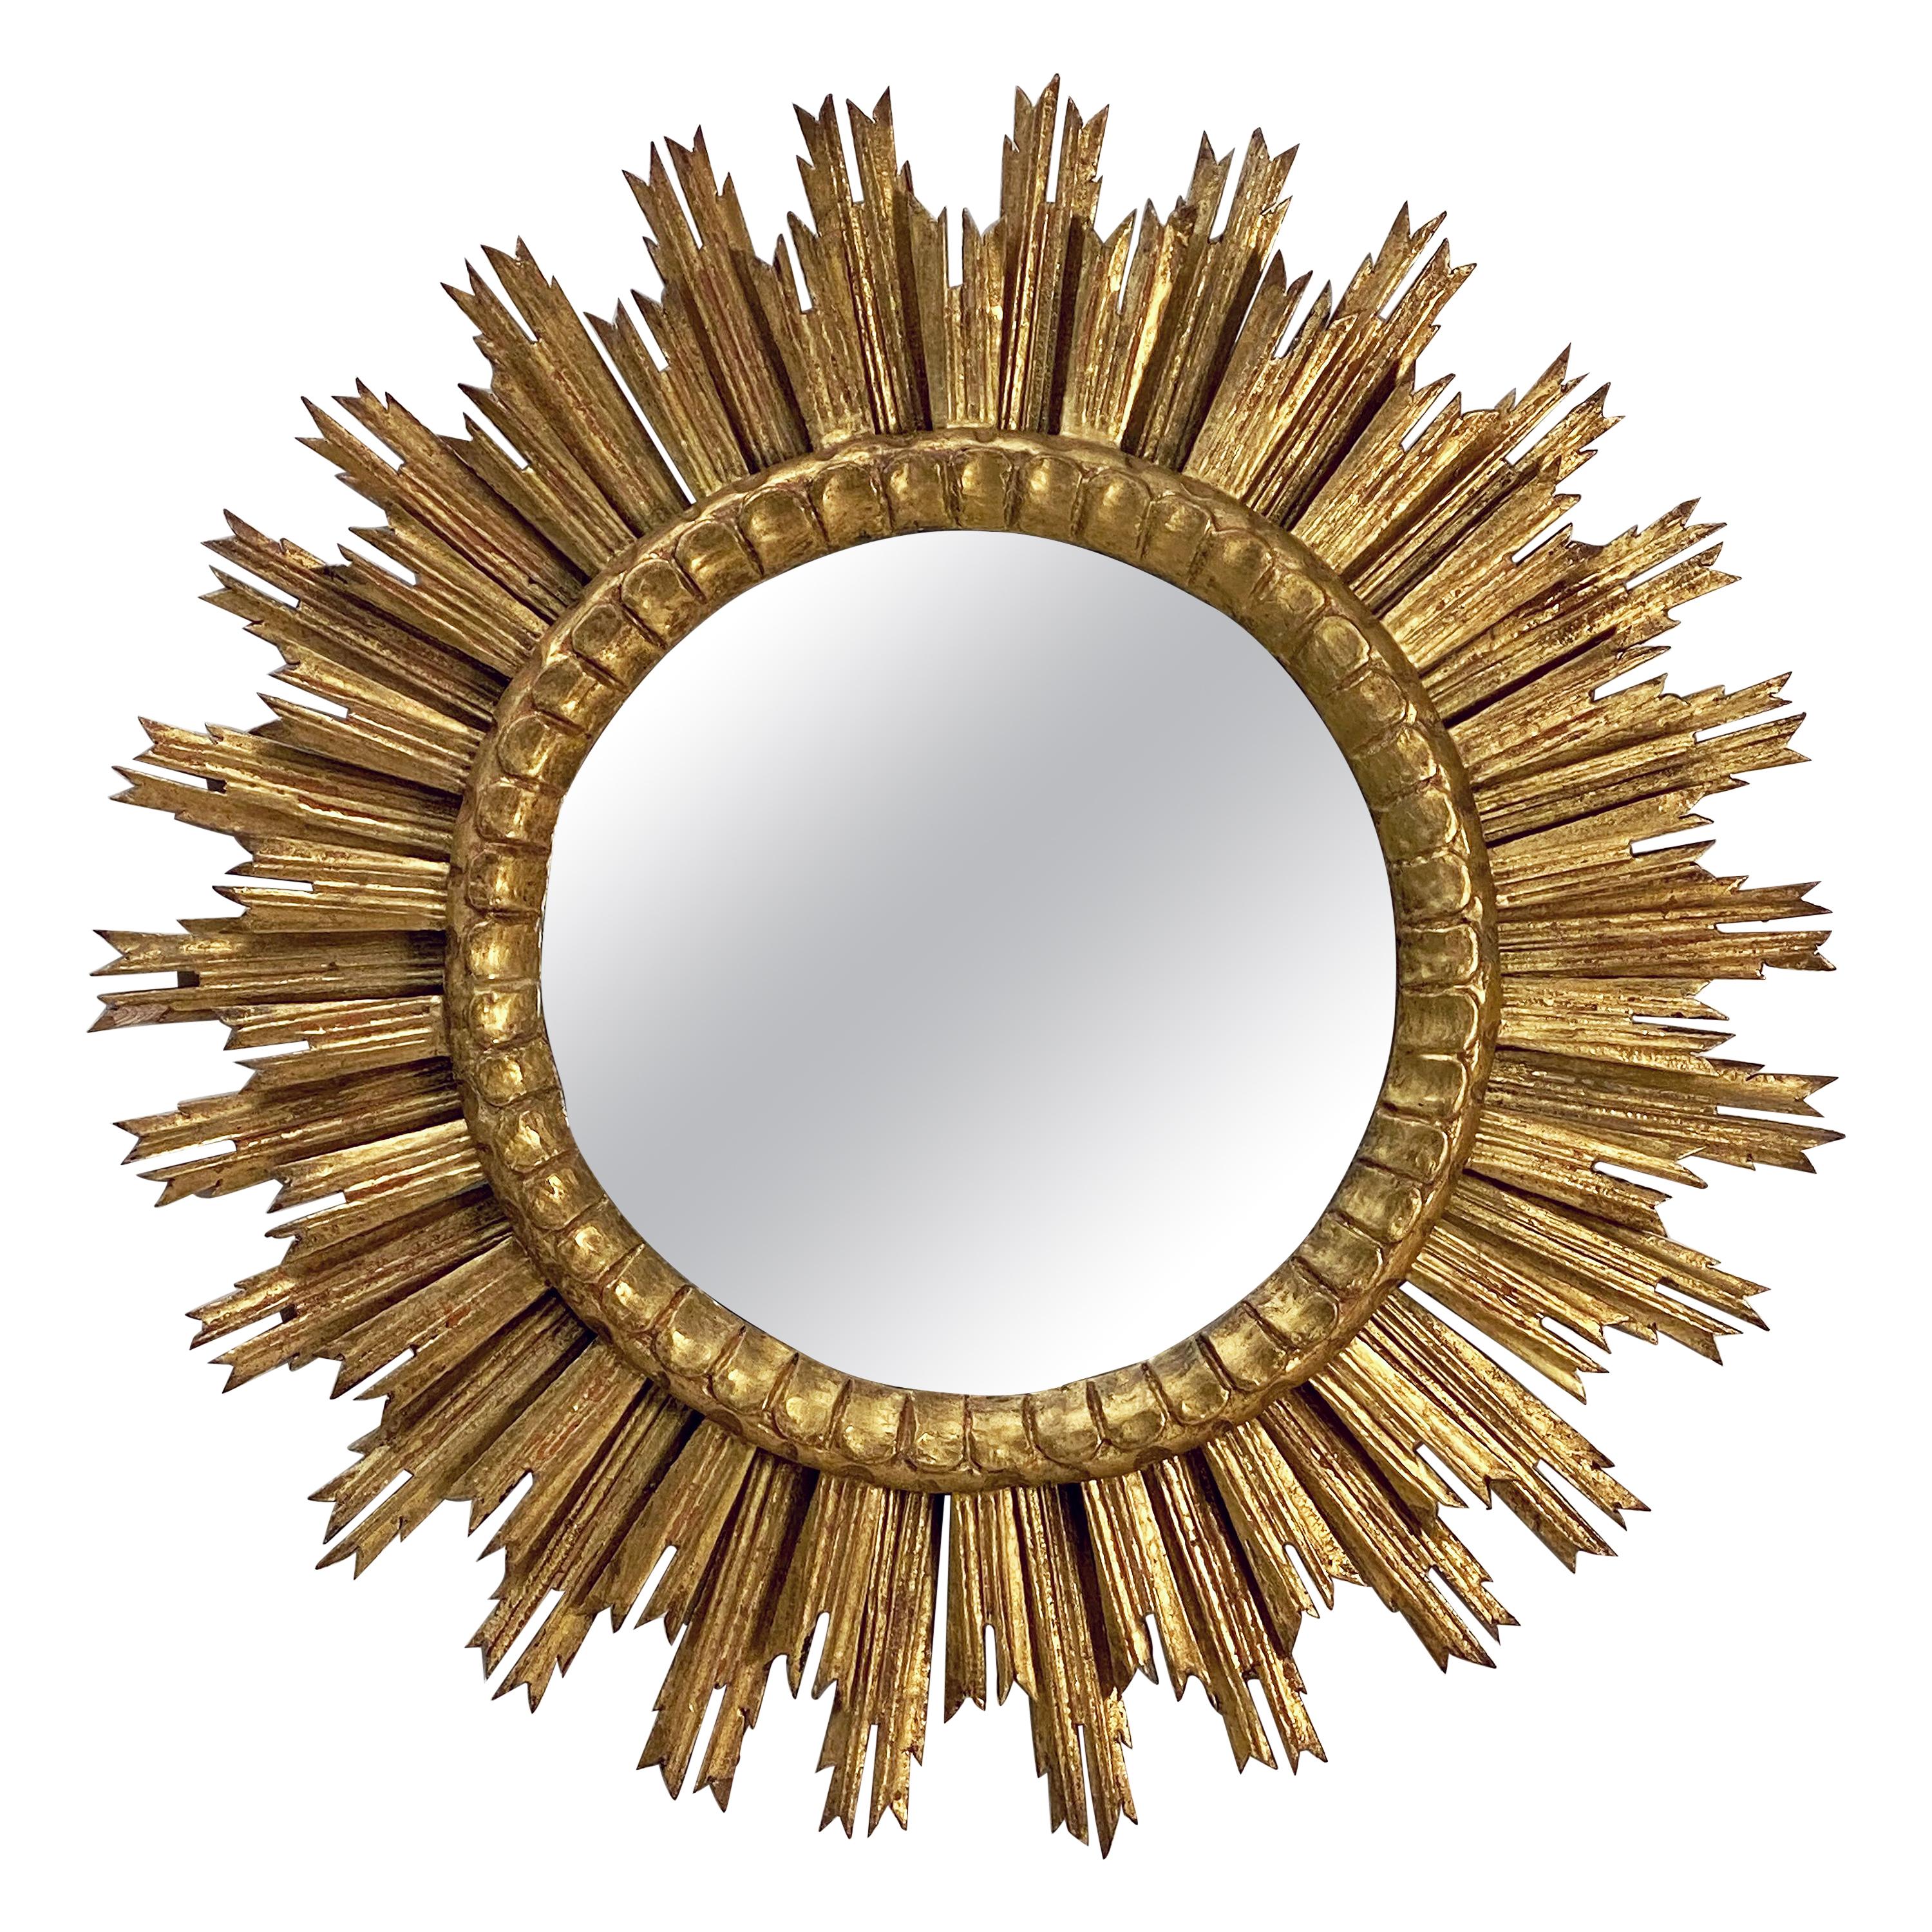 French Gilt Starburst or Sunburst Mirror (Diameter 30)